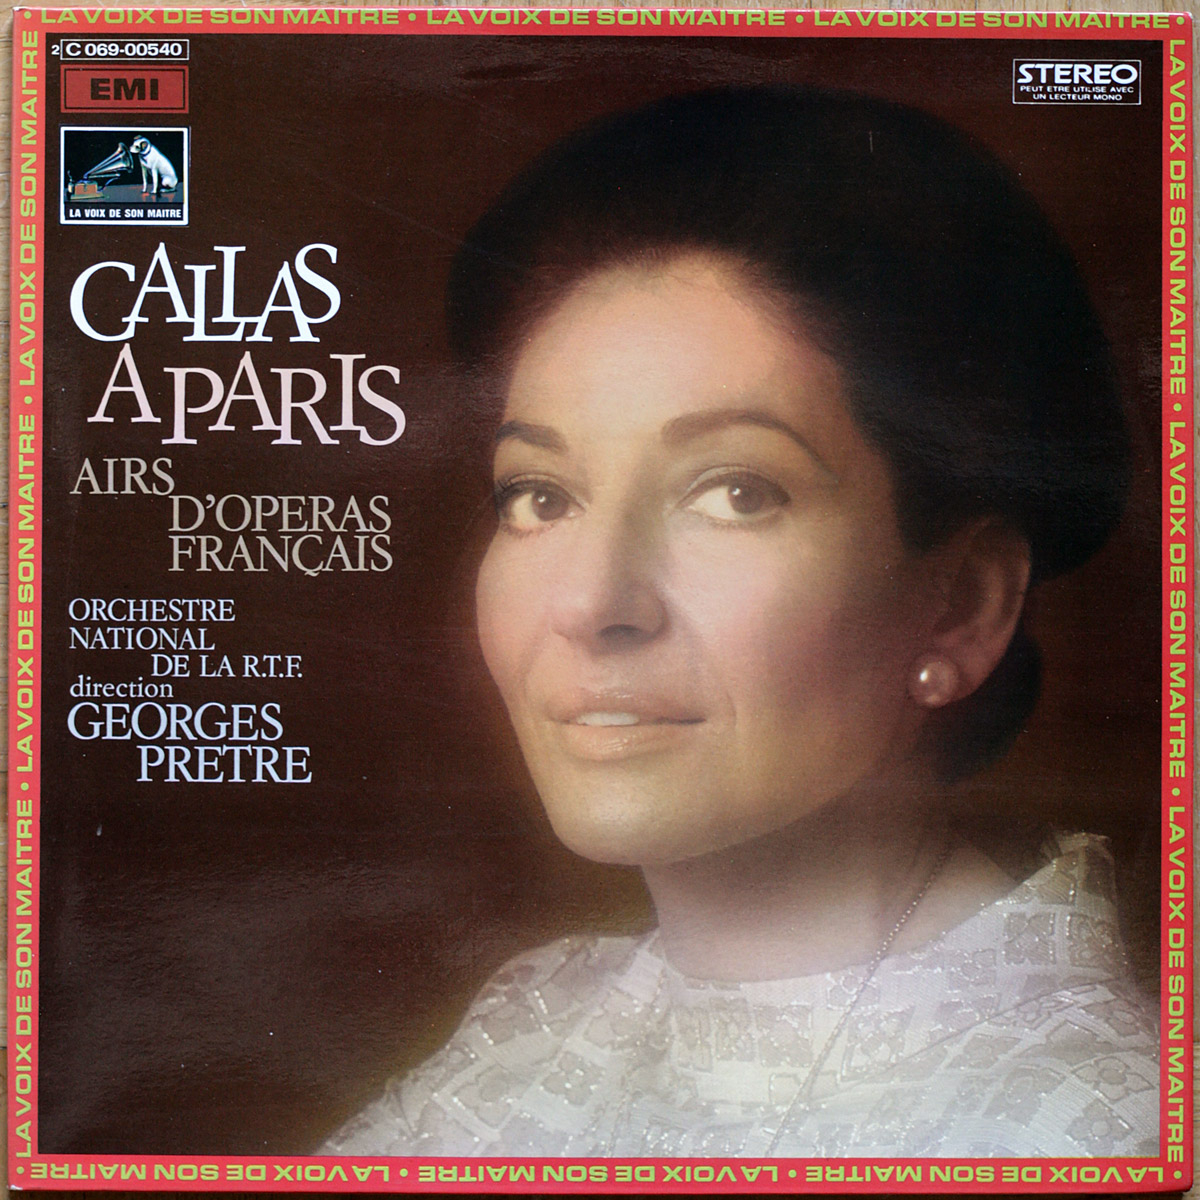 Callas à Paris • Airs d'opéras français • Gluck • Bizet • Saint-Saëns • Gounod • EMI 2C 053-00540 • Maria Callas • Orchestre National de la Radiodiffusion Française • Georges Prêtre